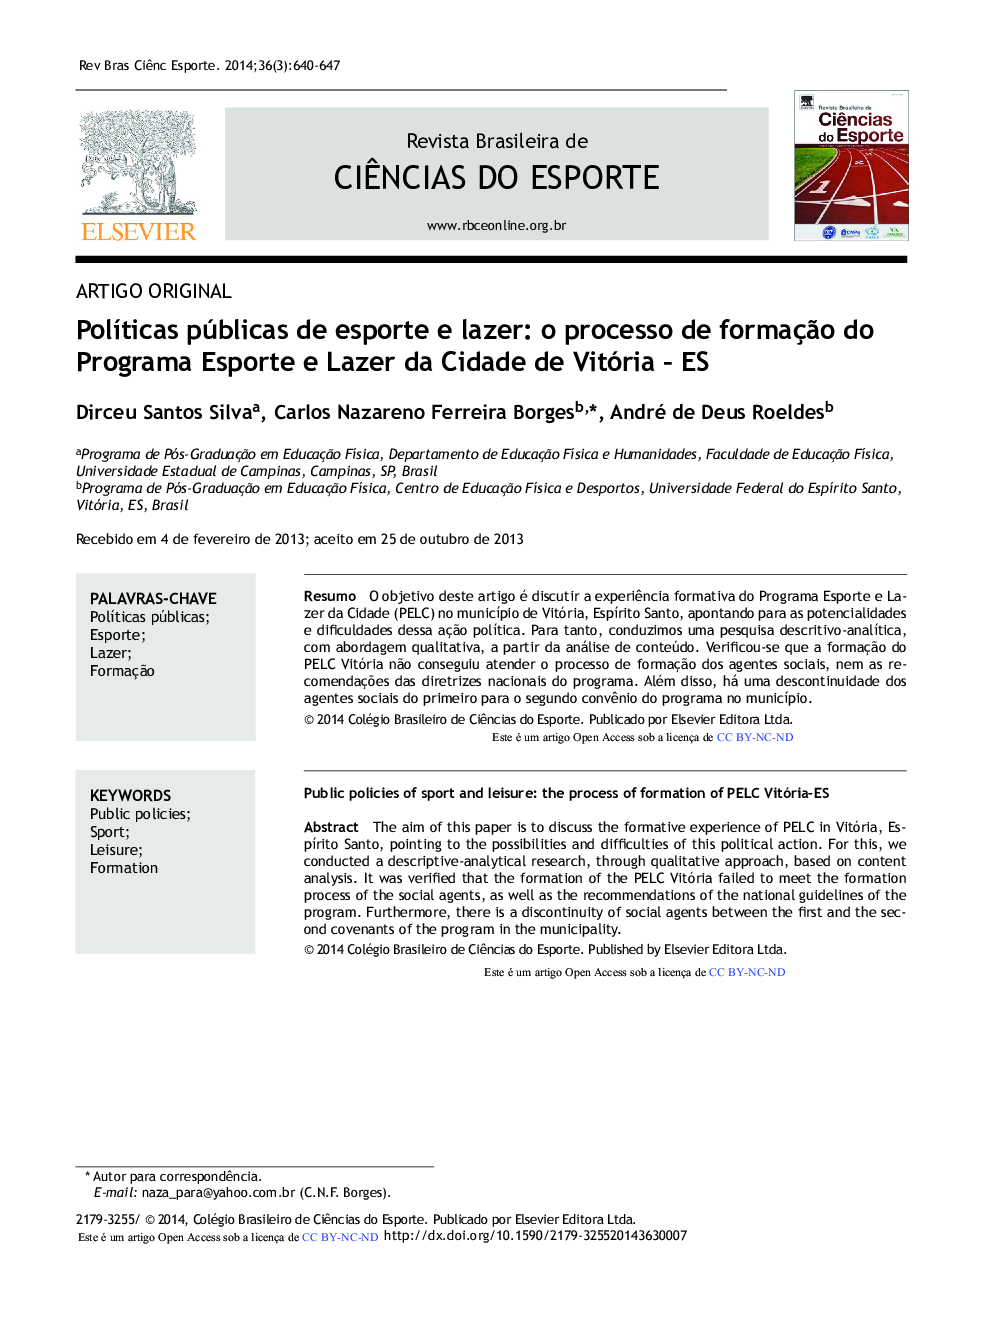 Políticas públicas de esporte e lazer: o processo de formação do Programa Esporte e Lazer da Cidade de Vitória - ES